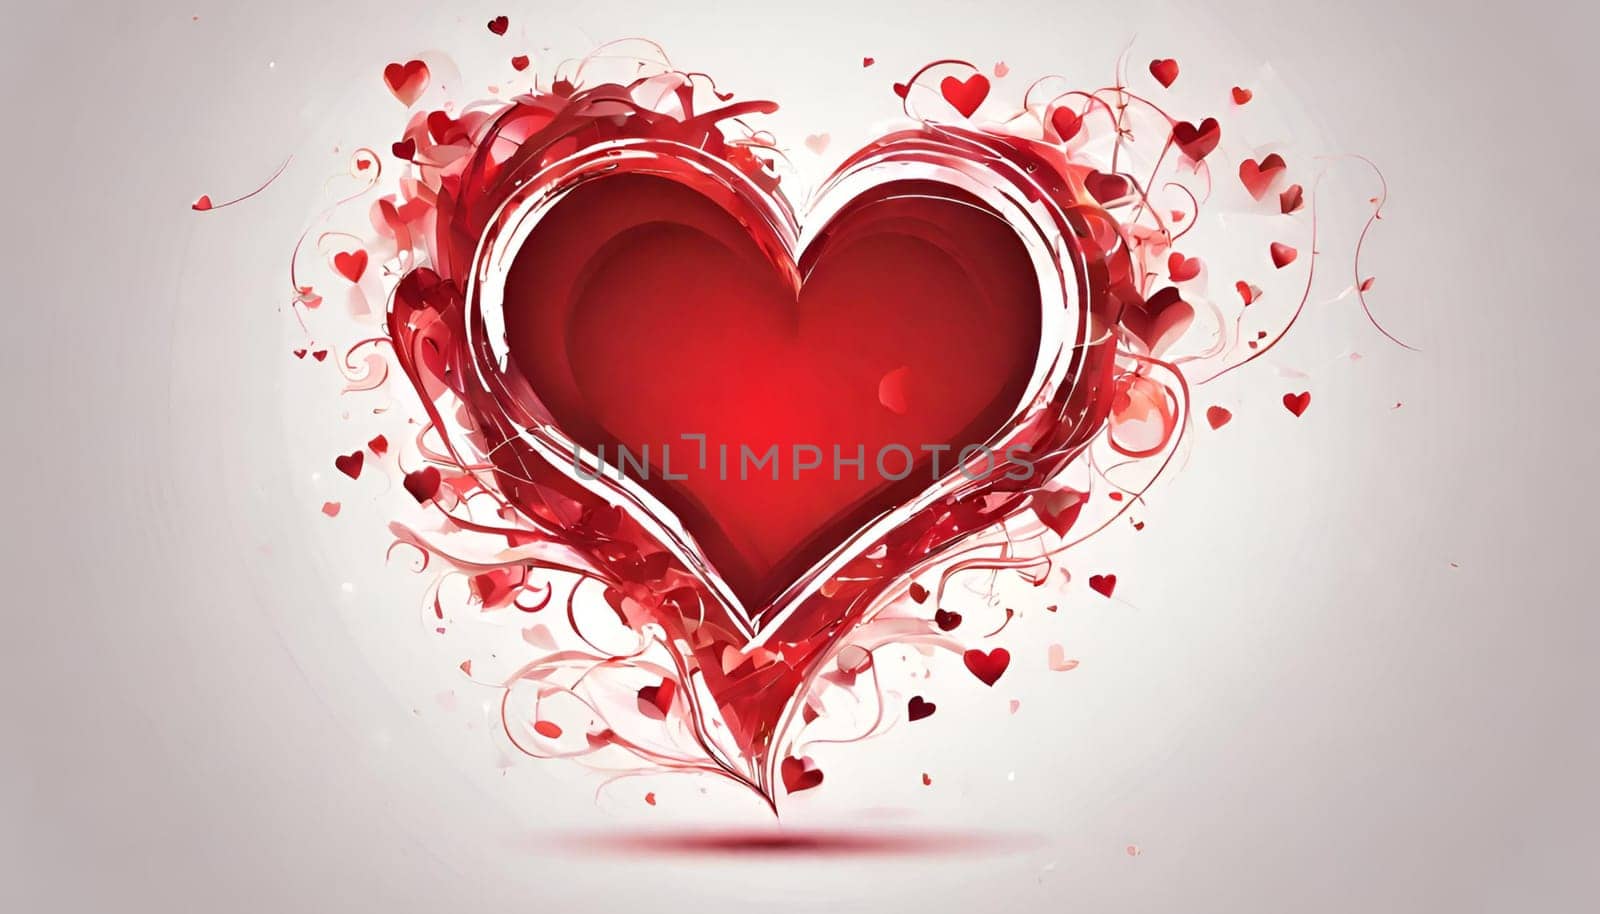 Valentine's Day creative heart art, red valentines Day heart design.Happy Valentine's day c